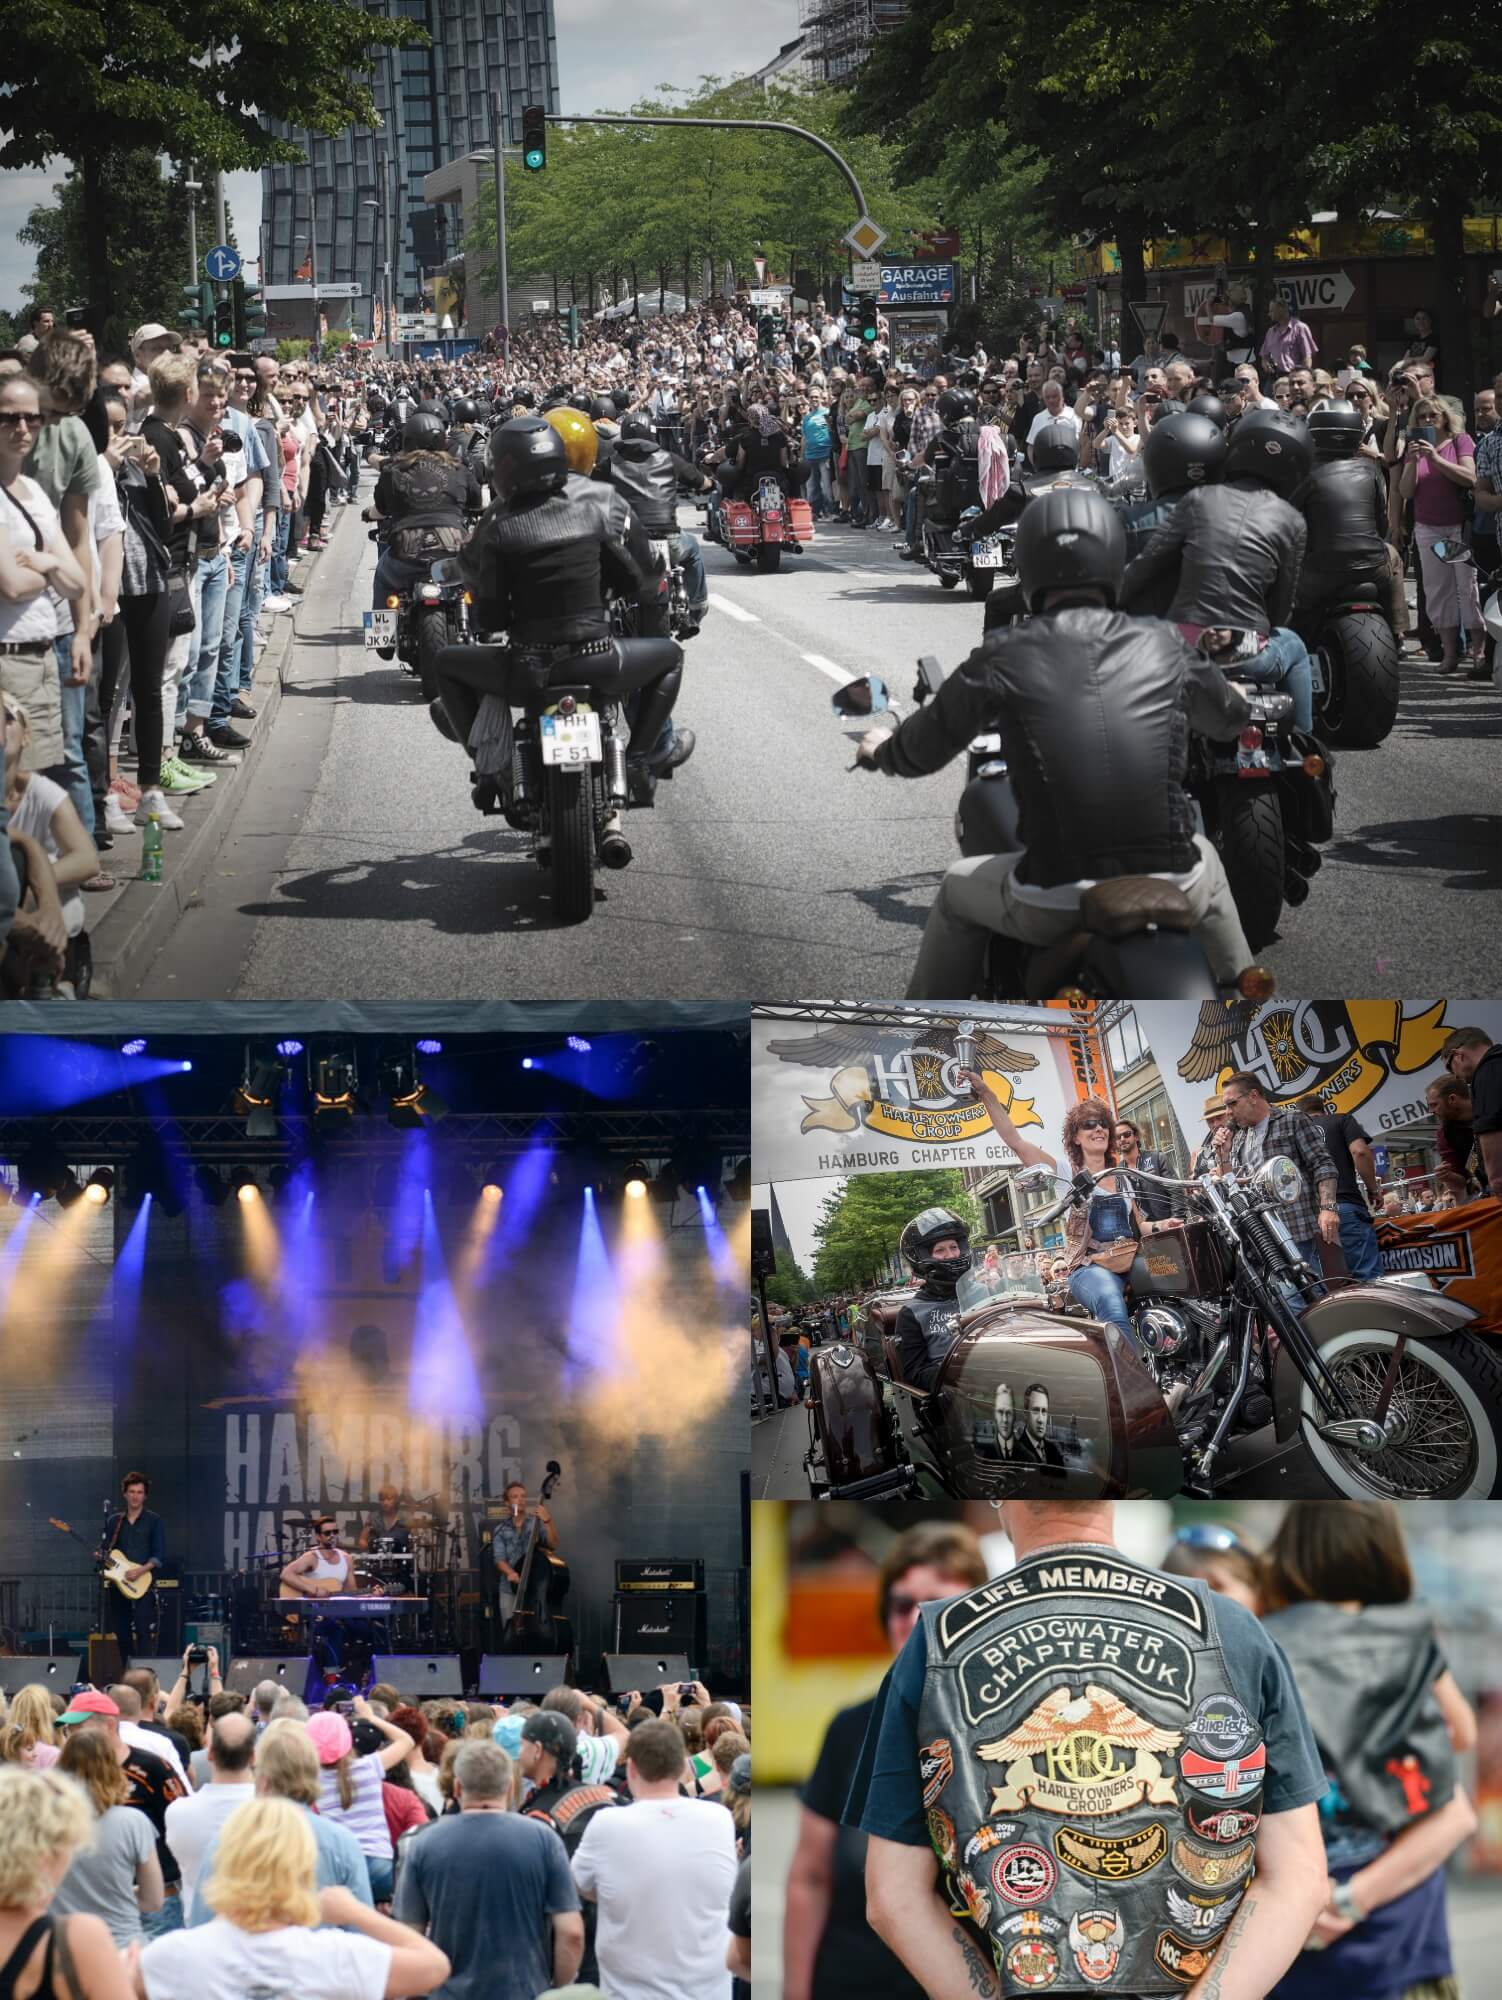 Die Harleys werden wieder auf Hochglanz poliert – denn mit 50.000 Bikes starten heute die Hamburg Harley Days! Noch bis Sonntag!